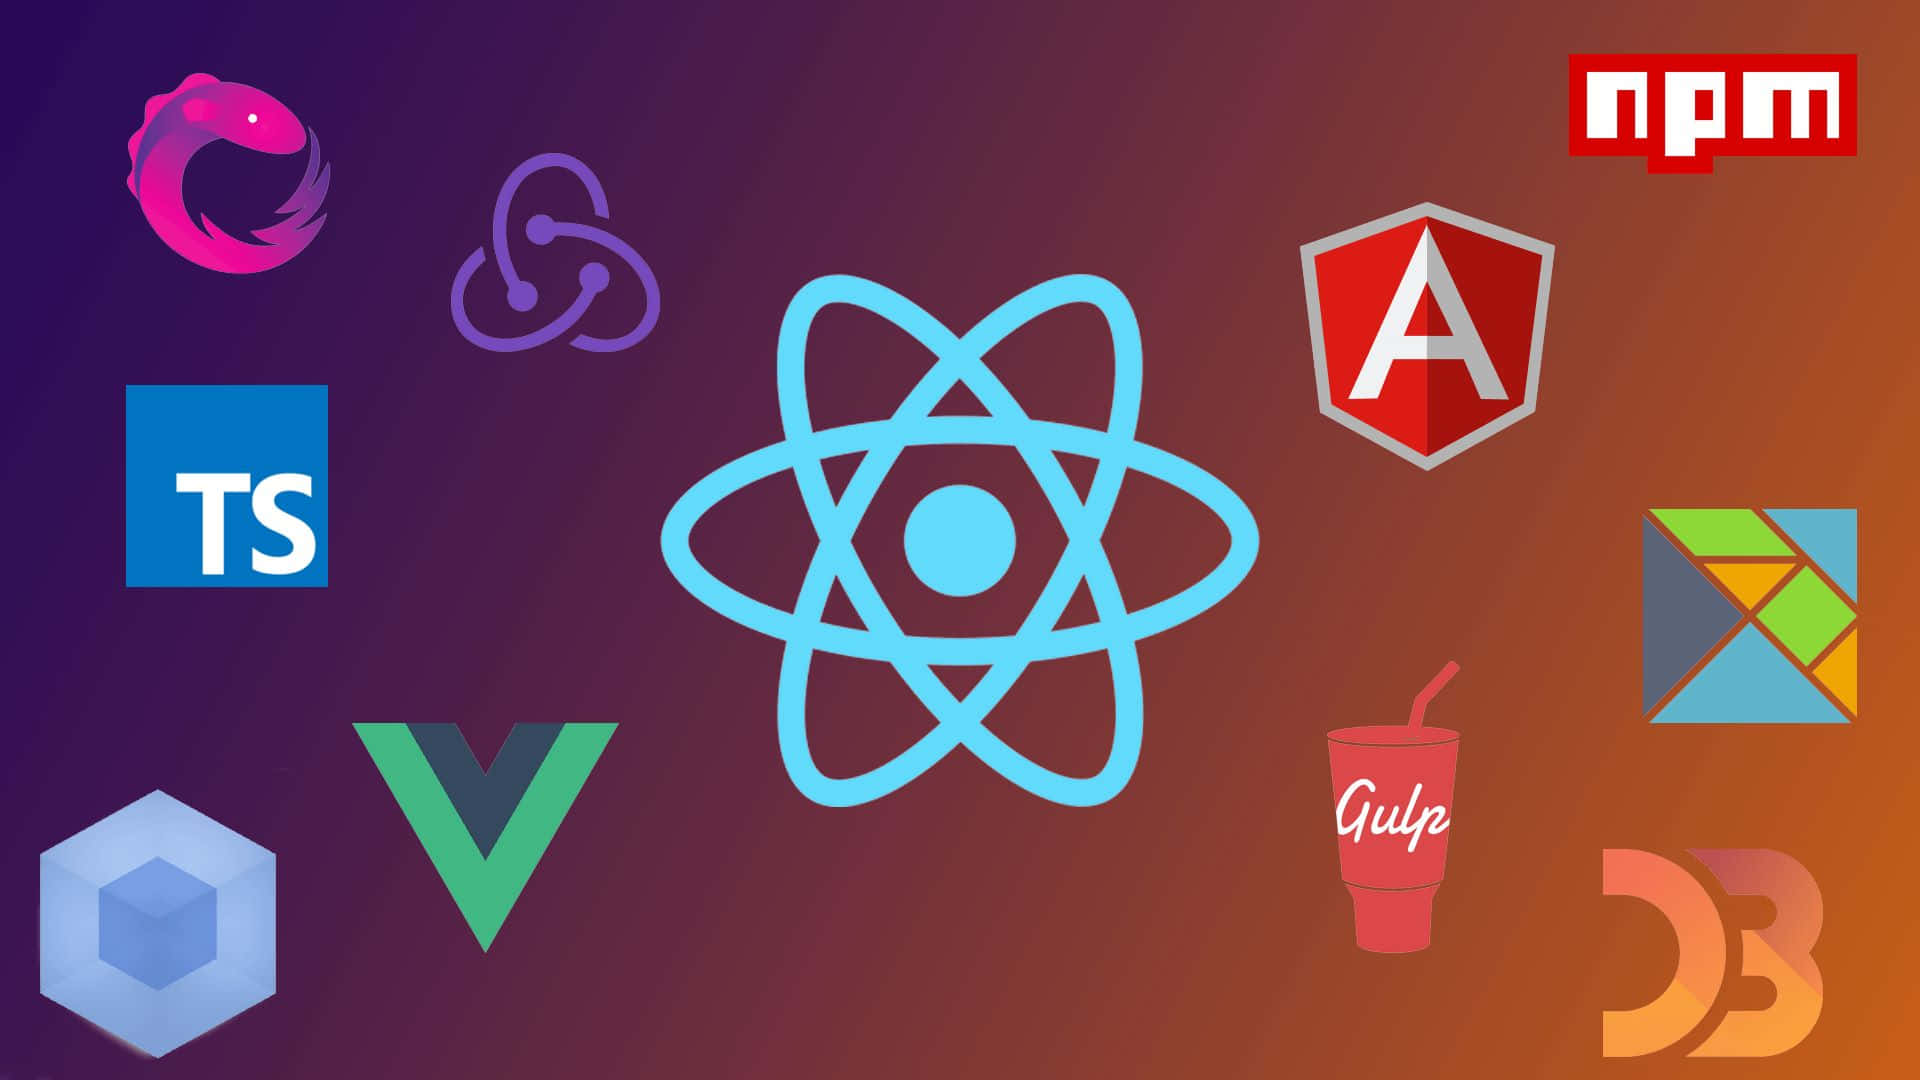 Java Script Development Tools Logos Wallpaper